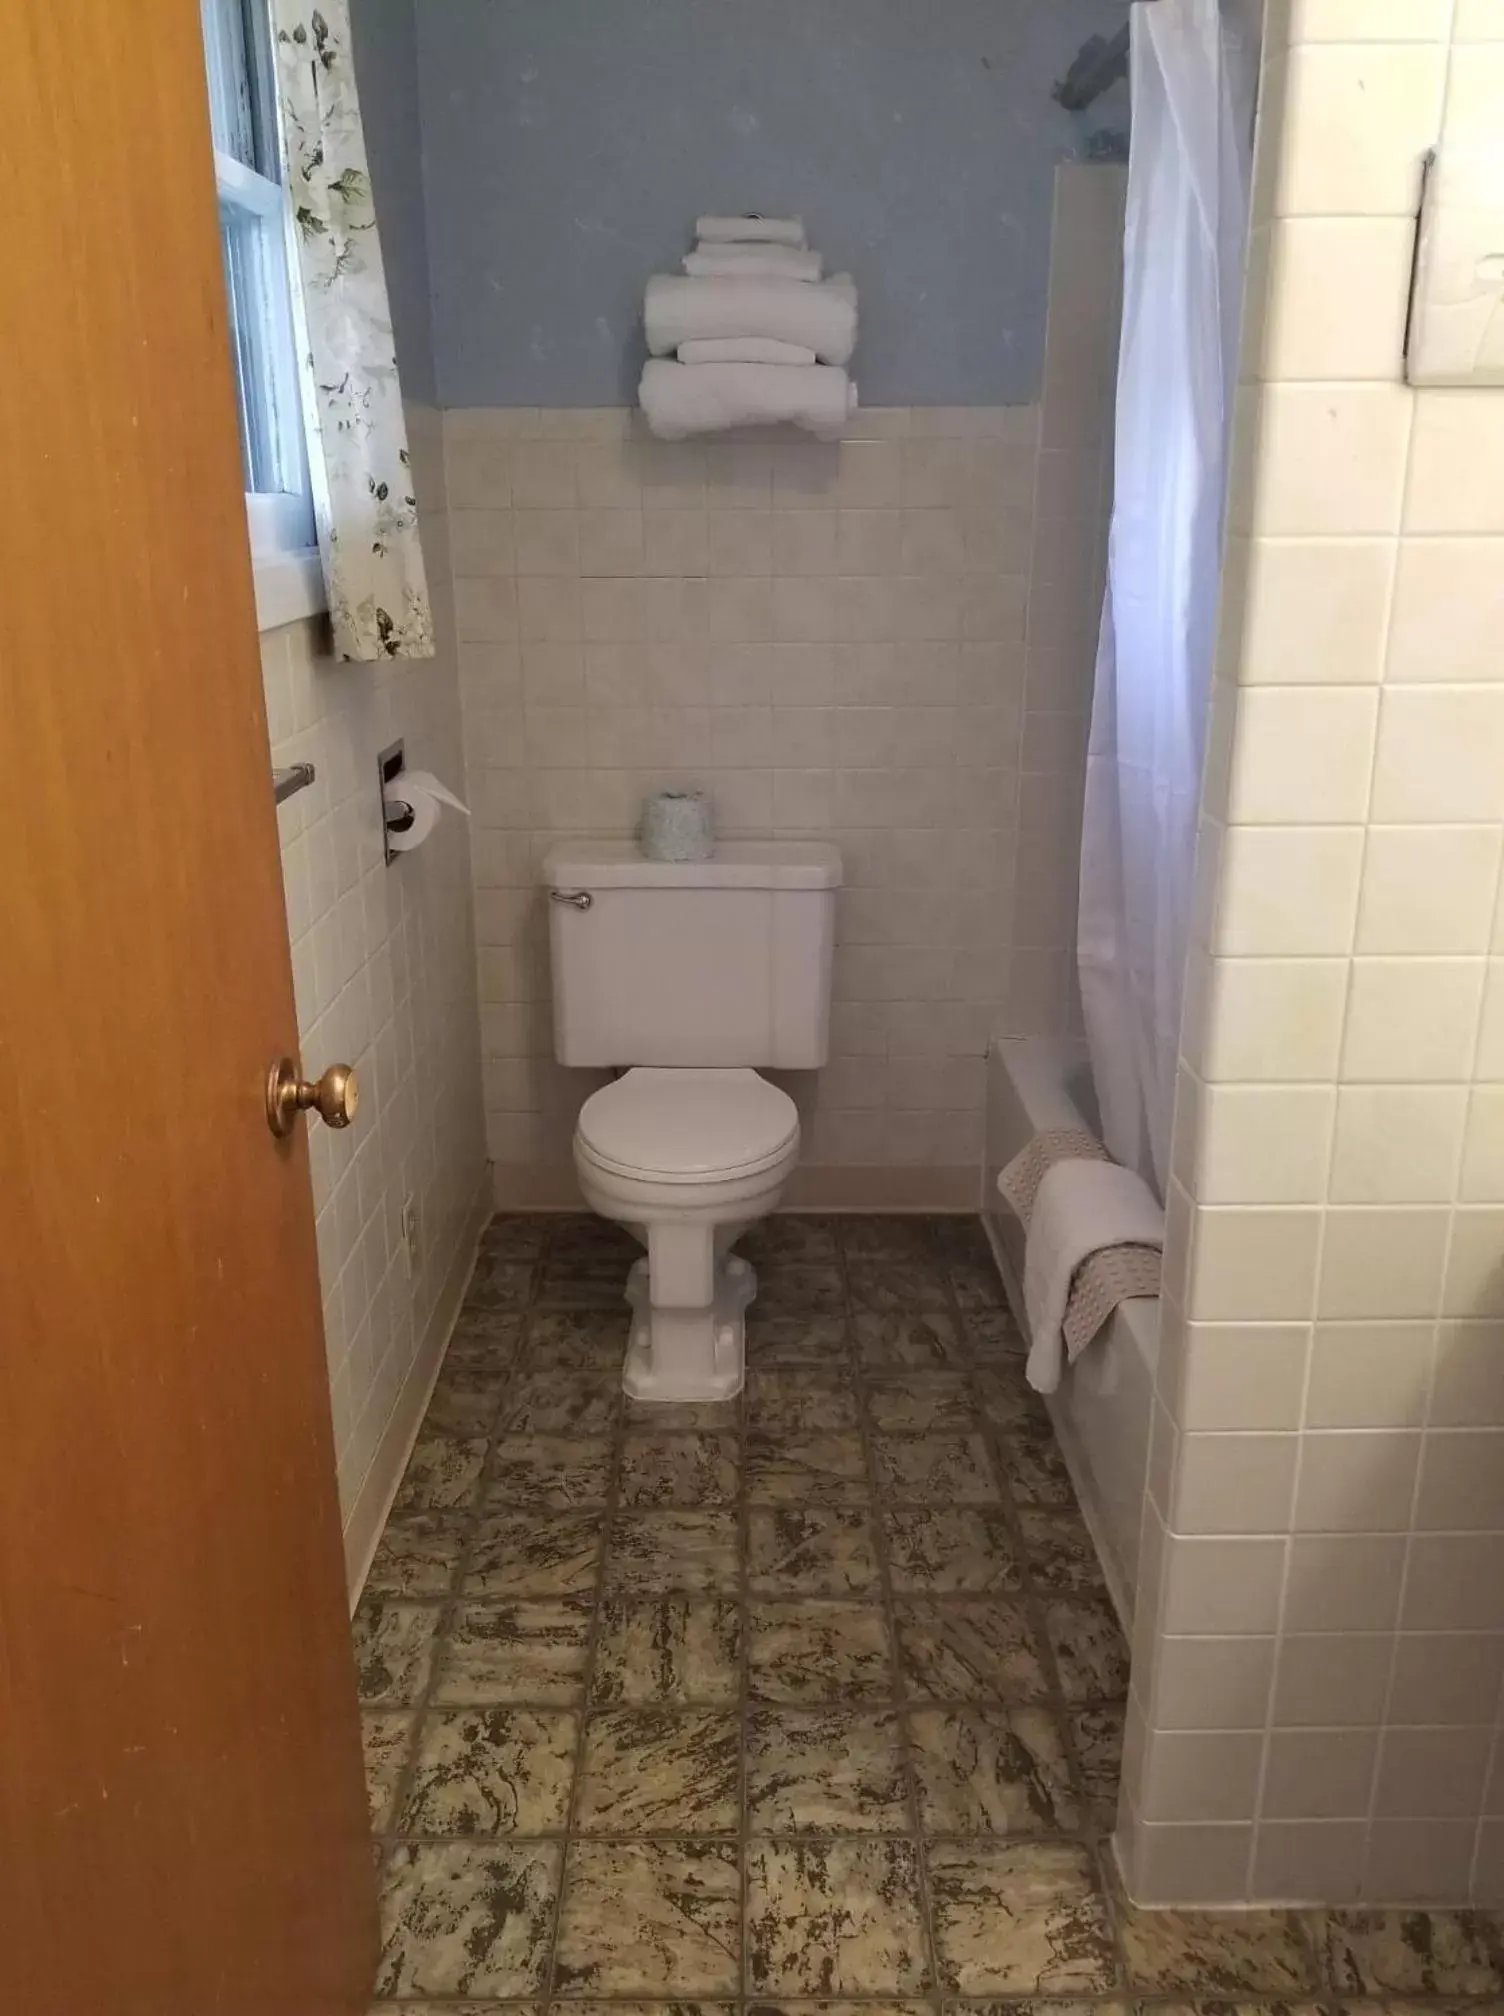 Bathroom in Oregon Trail Motel and Restaurant